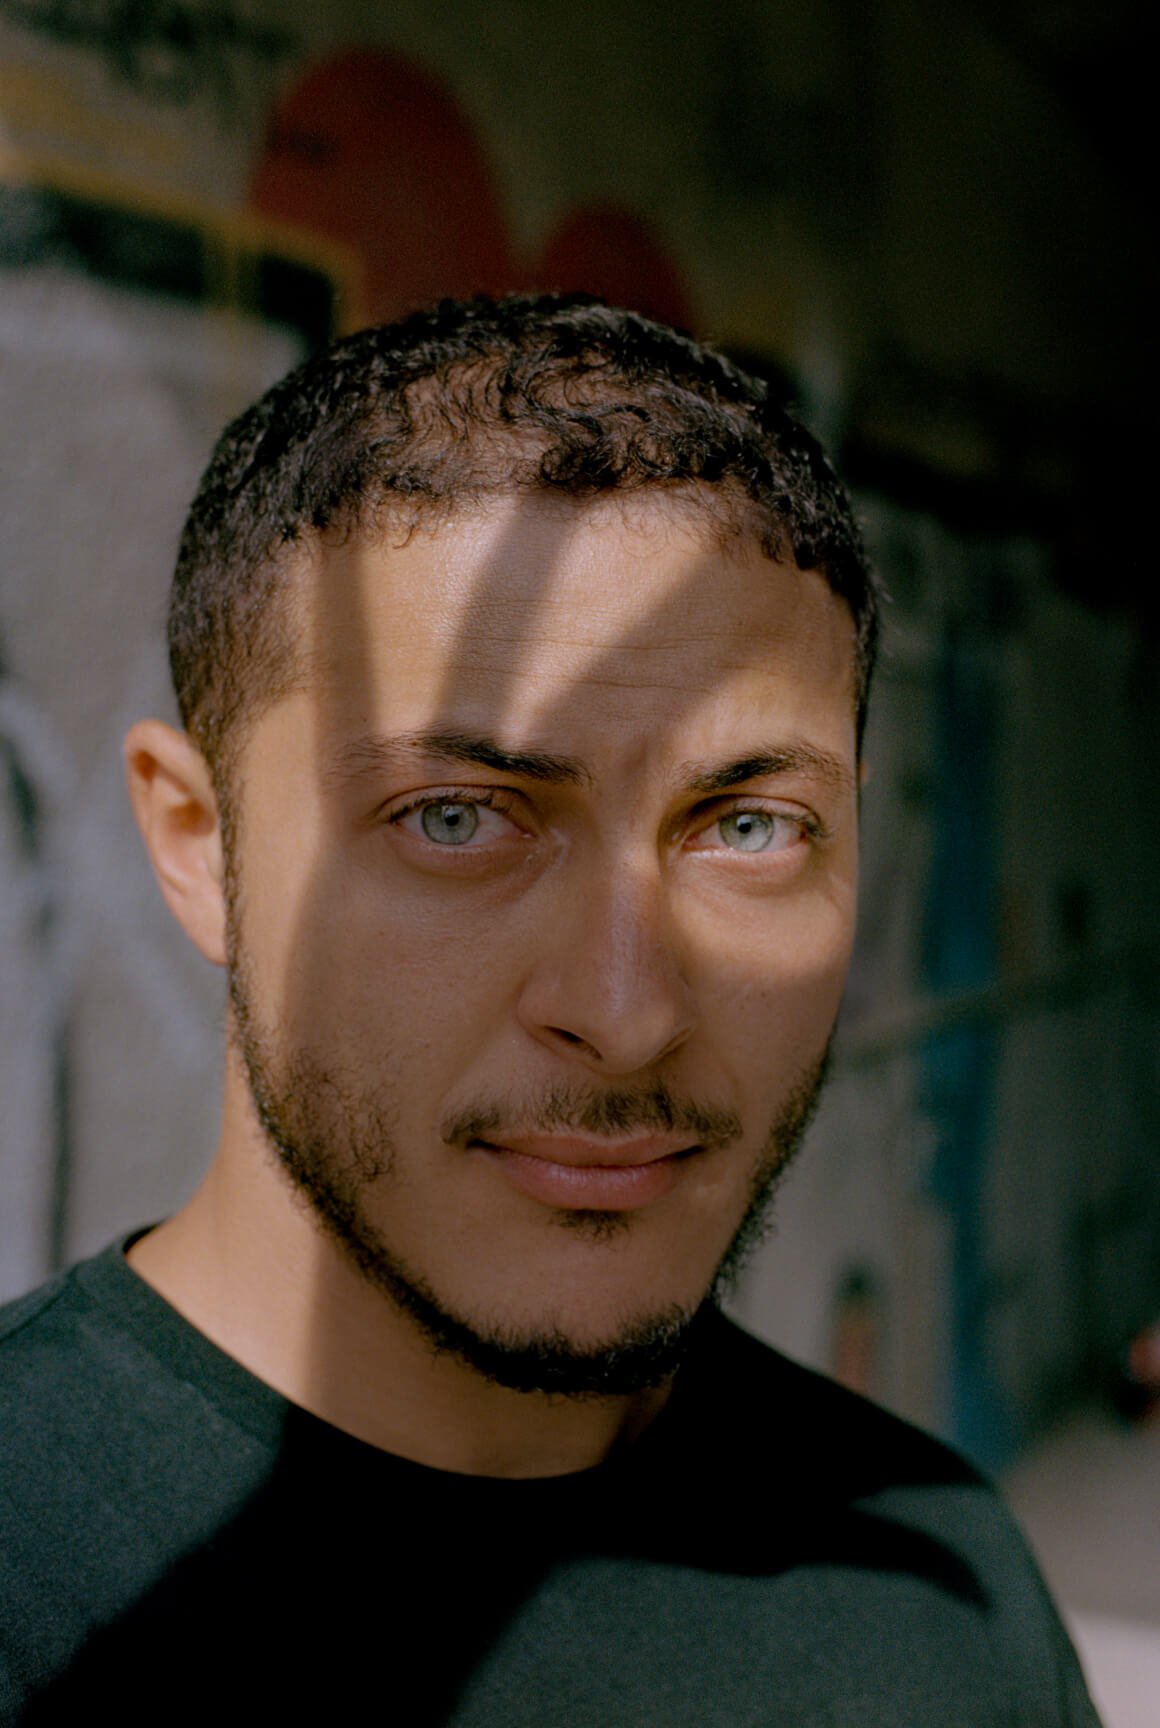 Retrato de un hombre tunecino con ojos azules y una sombra con forma de mano que se proyecta sobre su rostro.